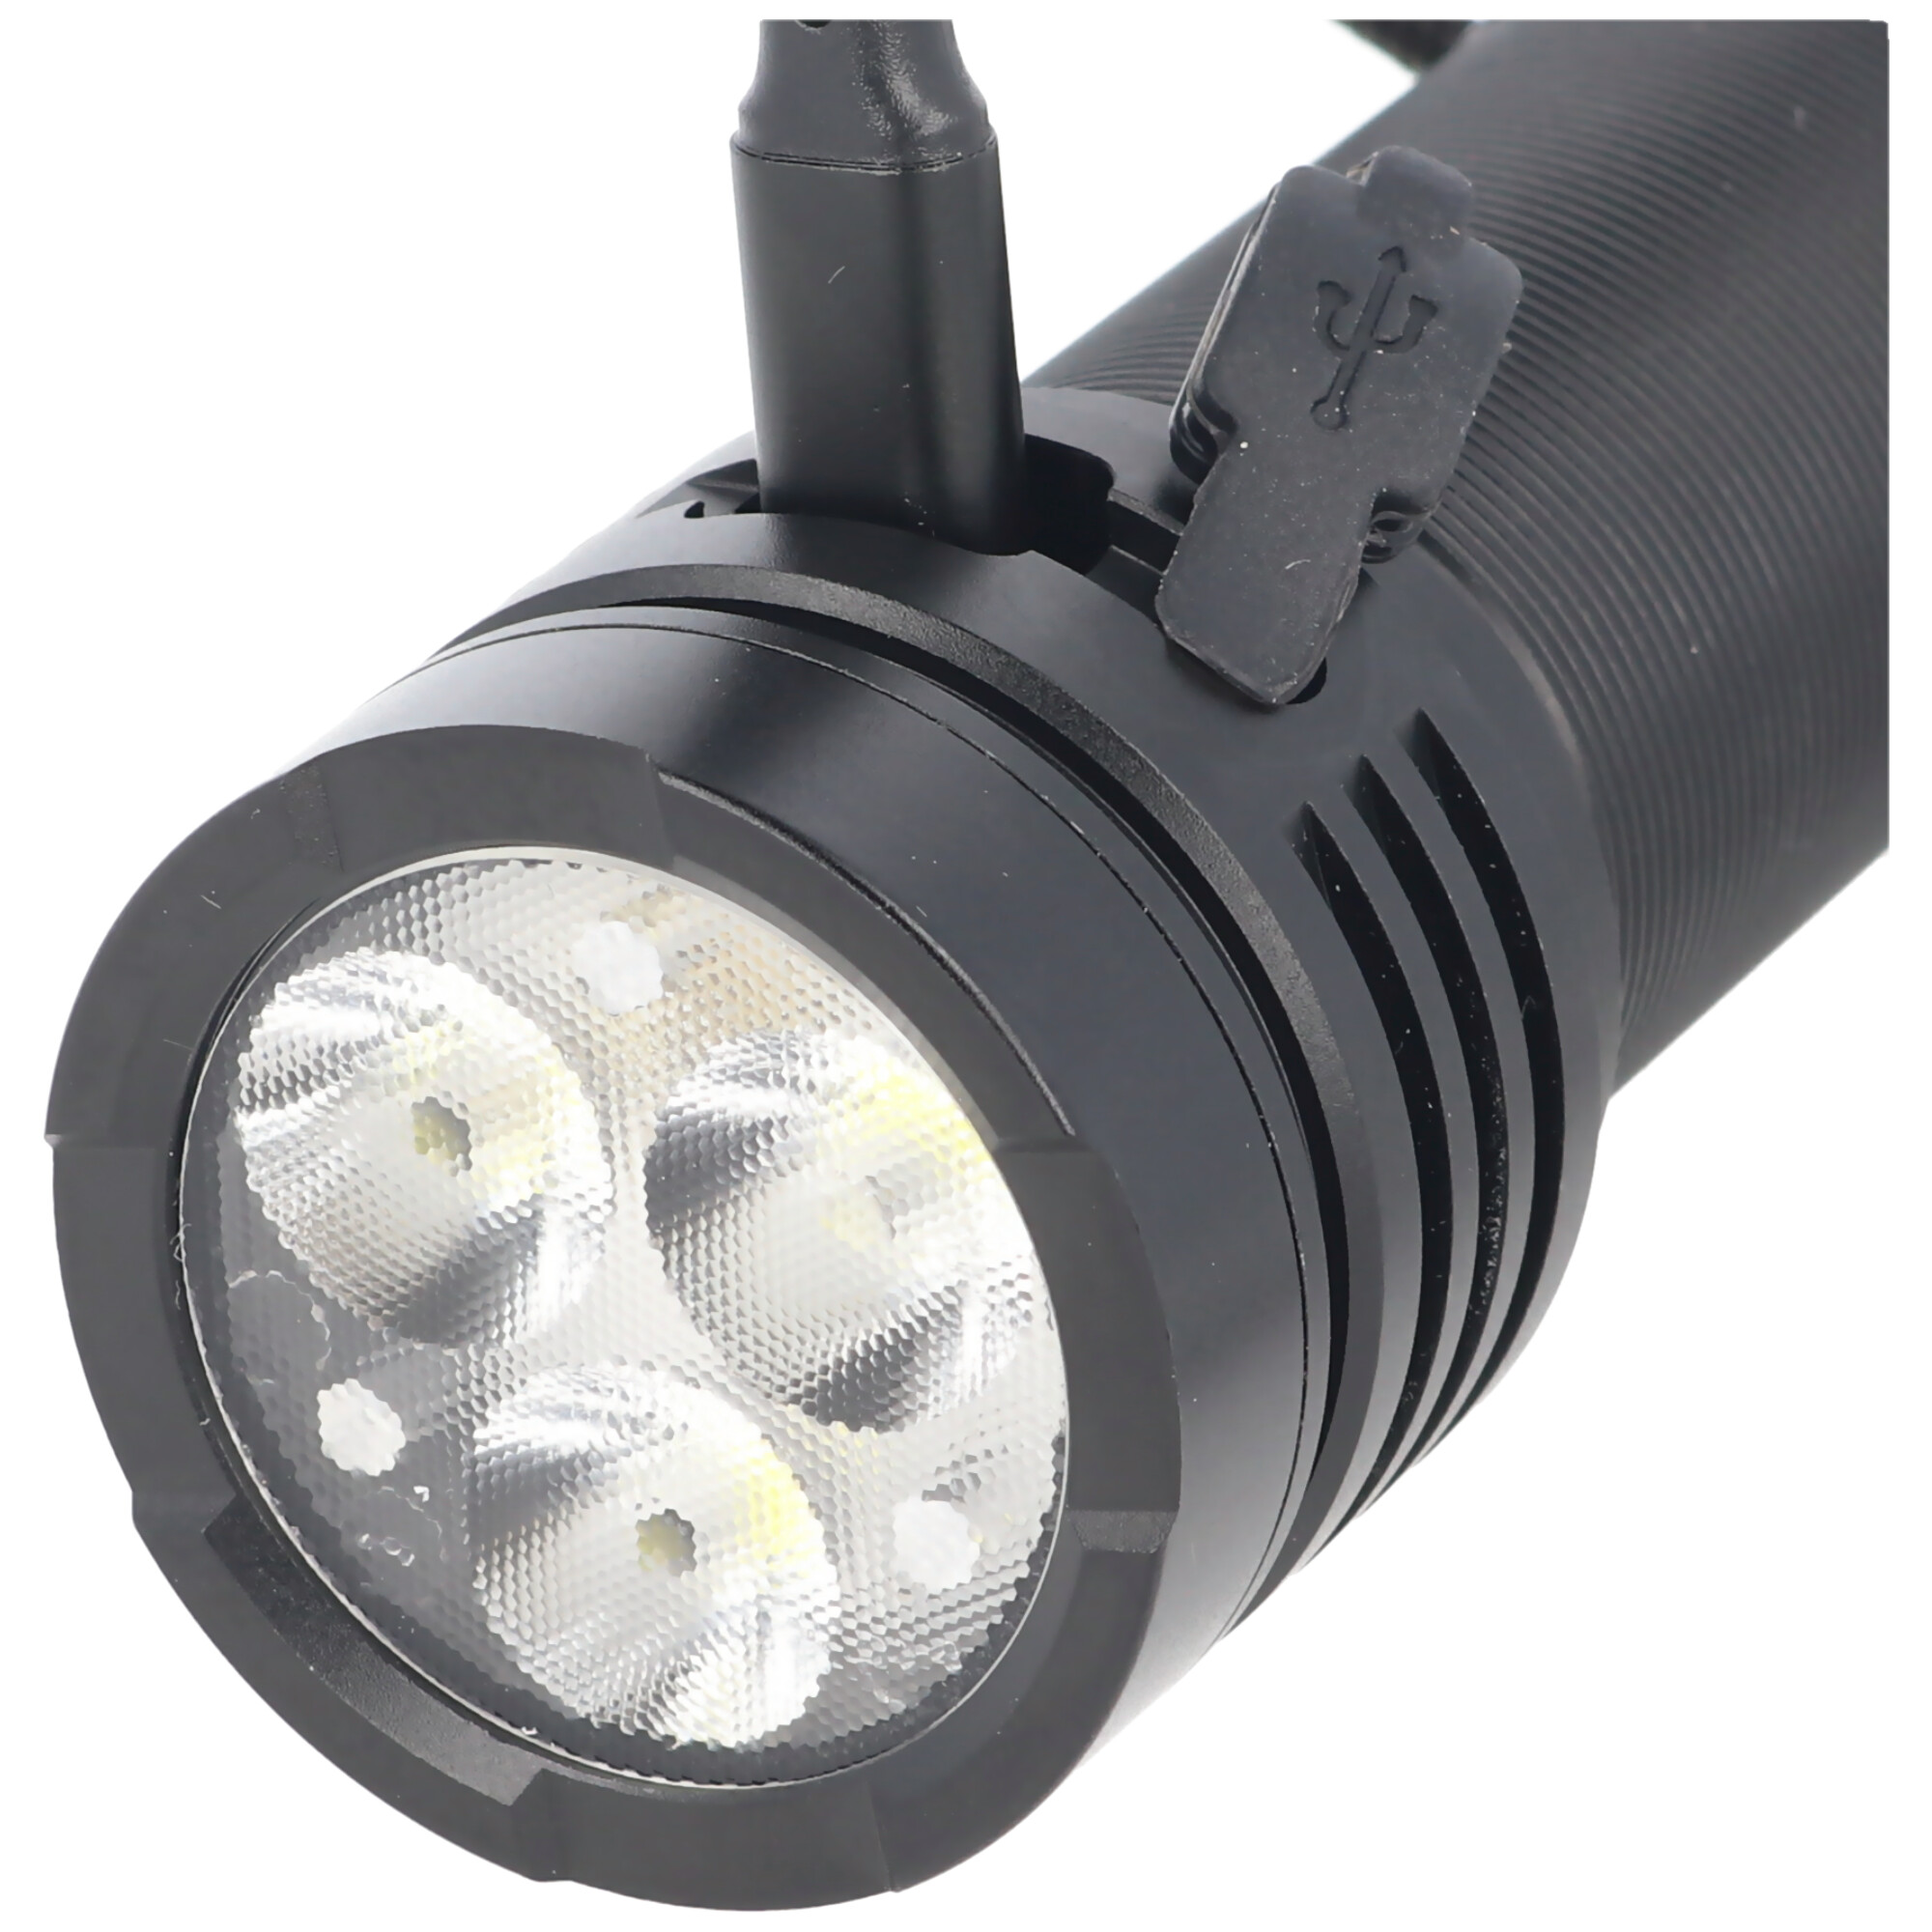 LED Taschenlampe mit großer Reichweite inklusive Akku, mit Handschlaufe